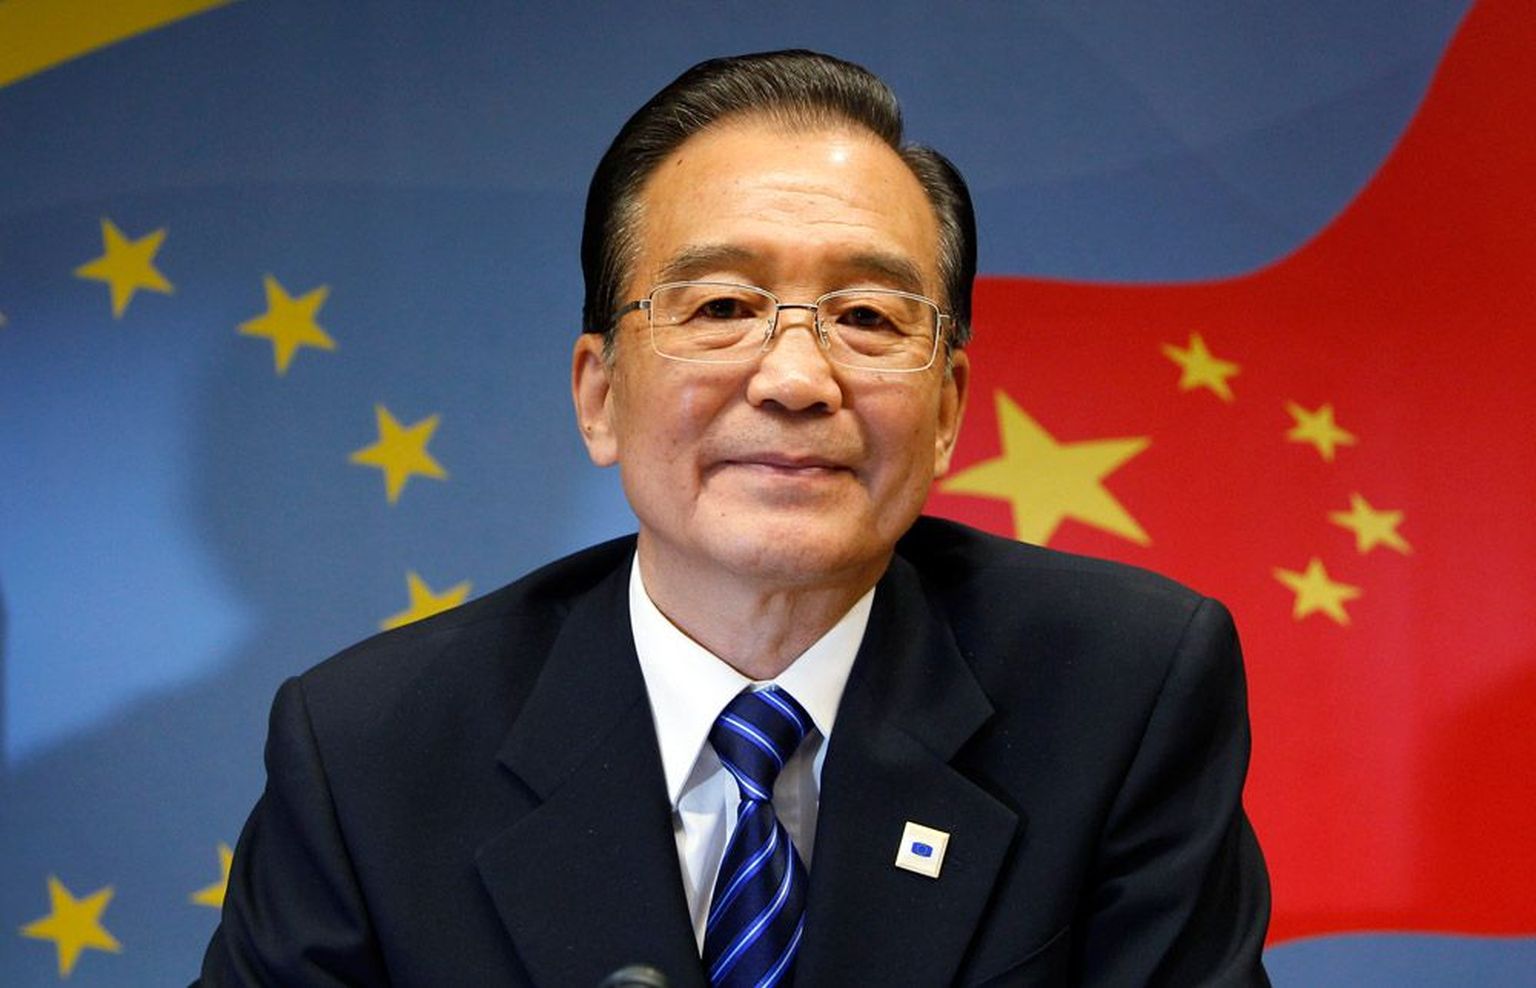 Wen Jiabao, Hiina peaminister:
«Olen veendunud, et tugev euro on 
asendamatu.»